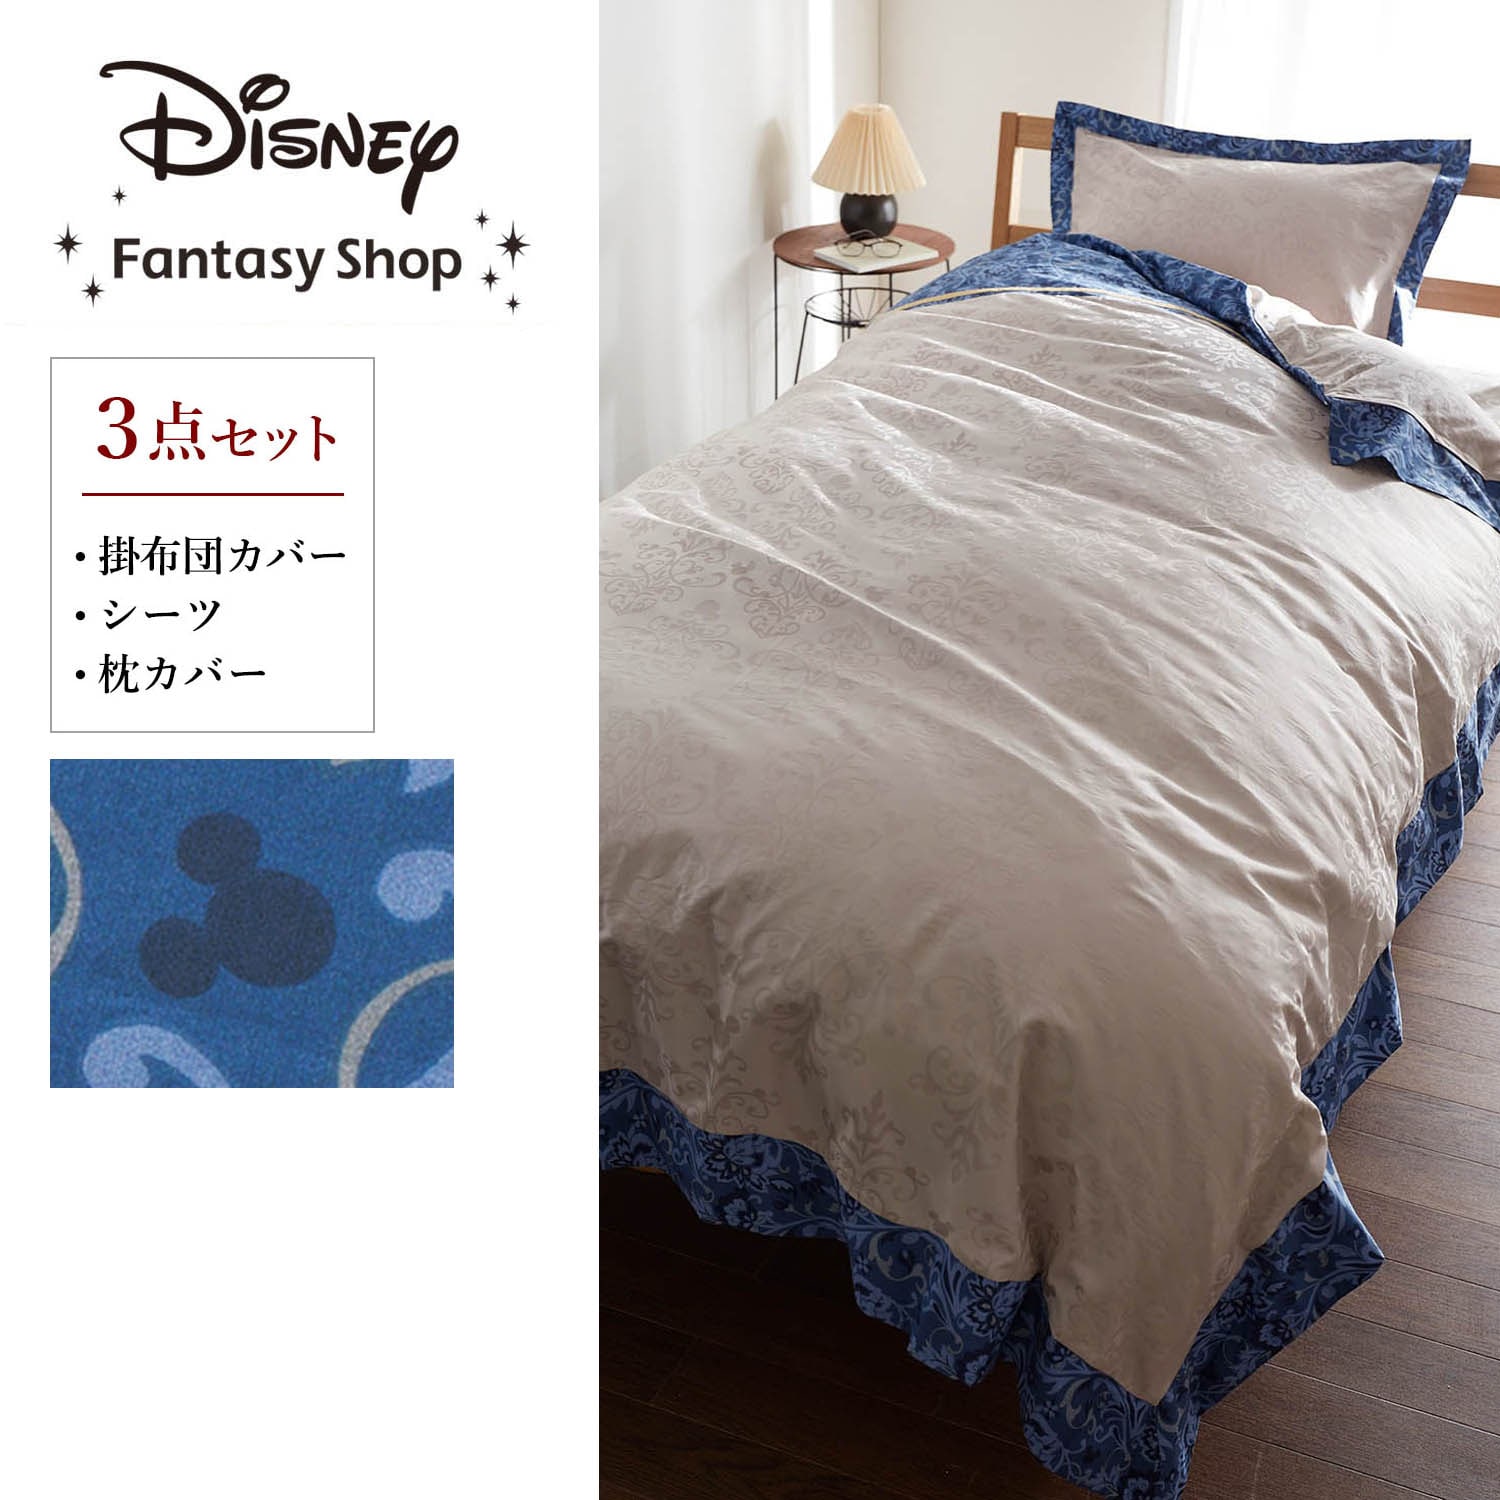 【ディズニー/Disney】ジャカード織の布団カバーセット(3点)「ミッキーモチーフ」画像